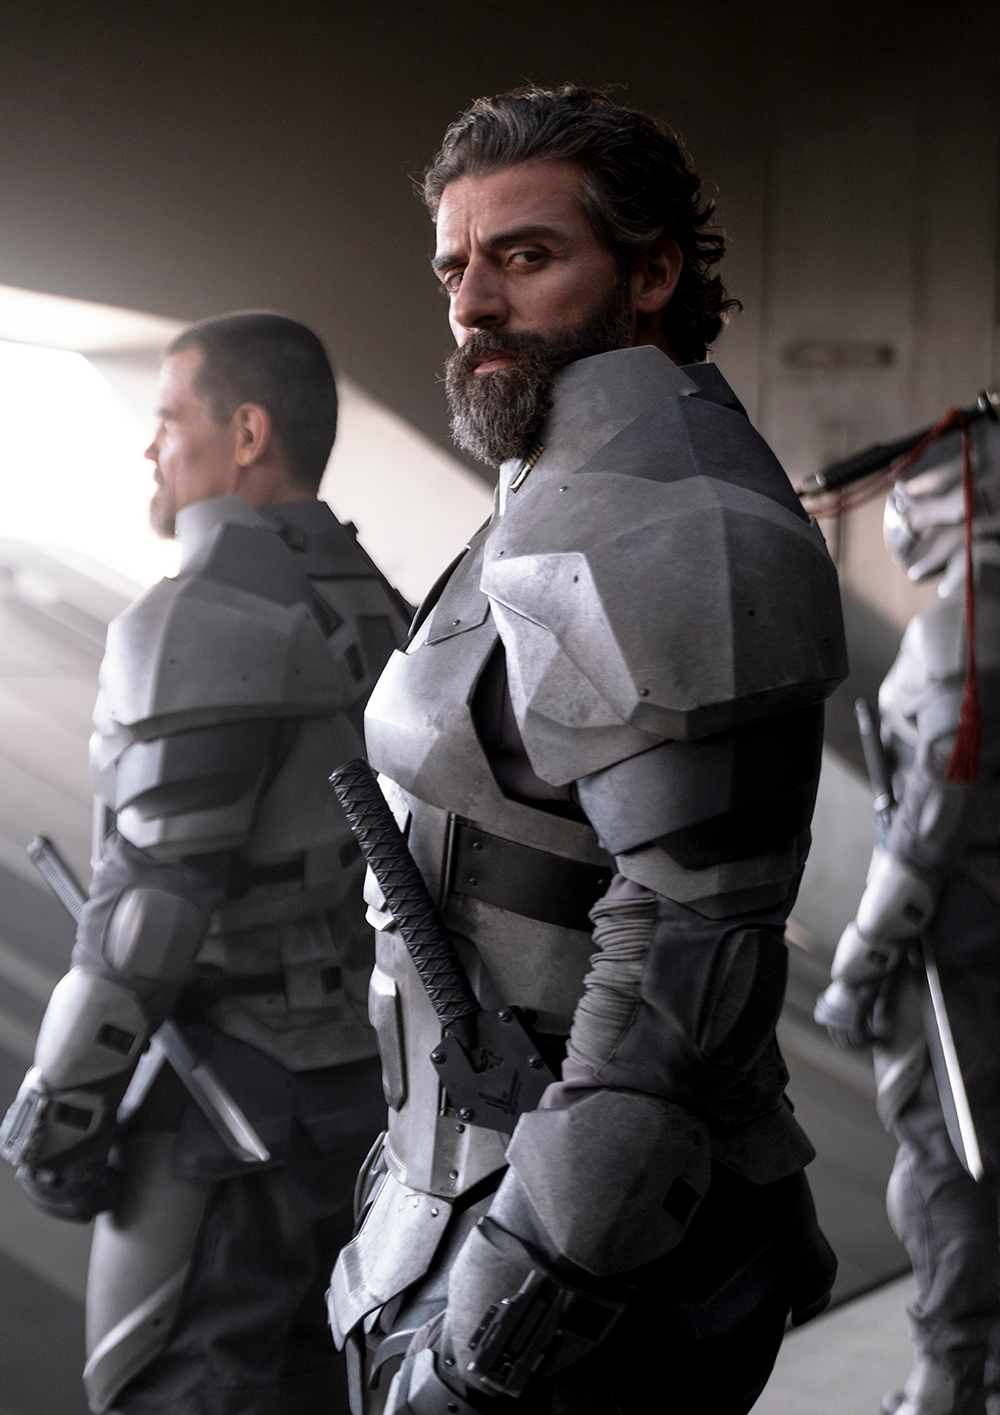 Oscar Isaac standing in sci-fi armor